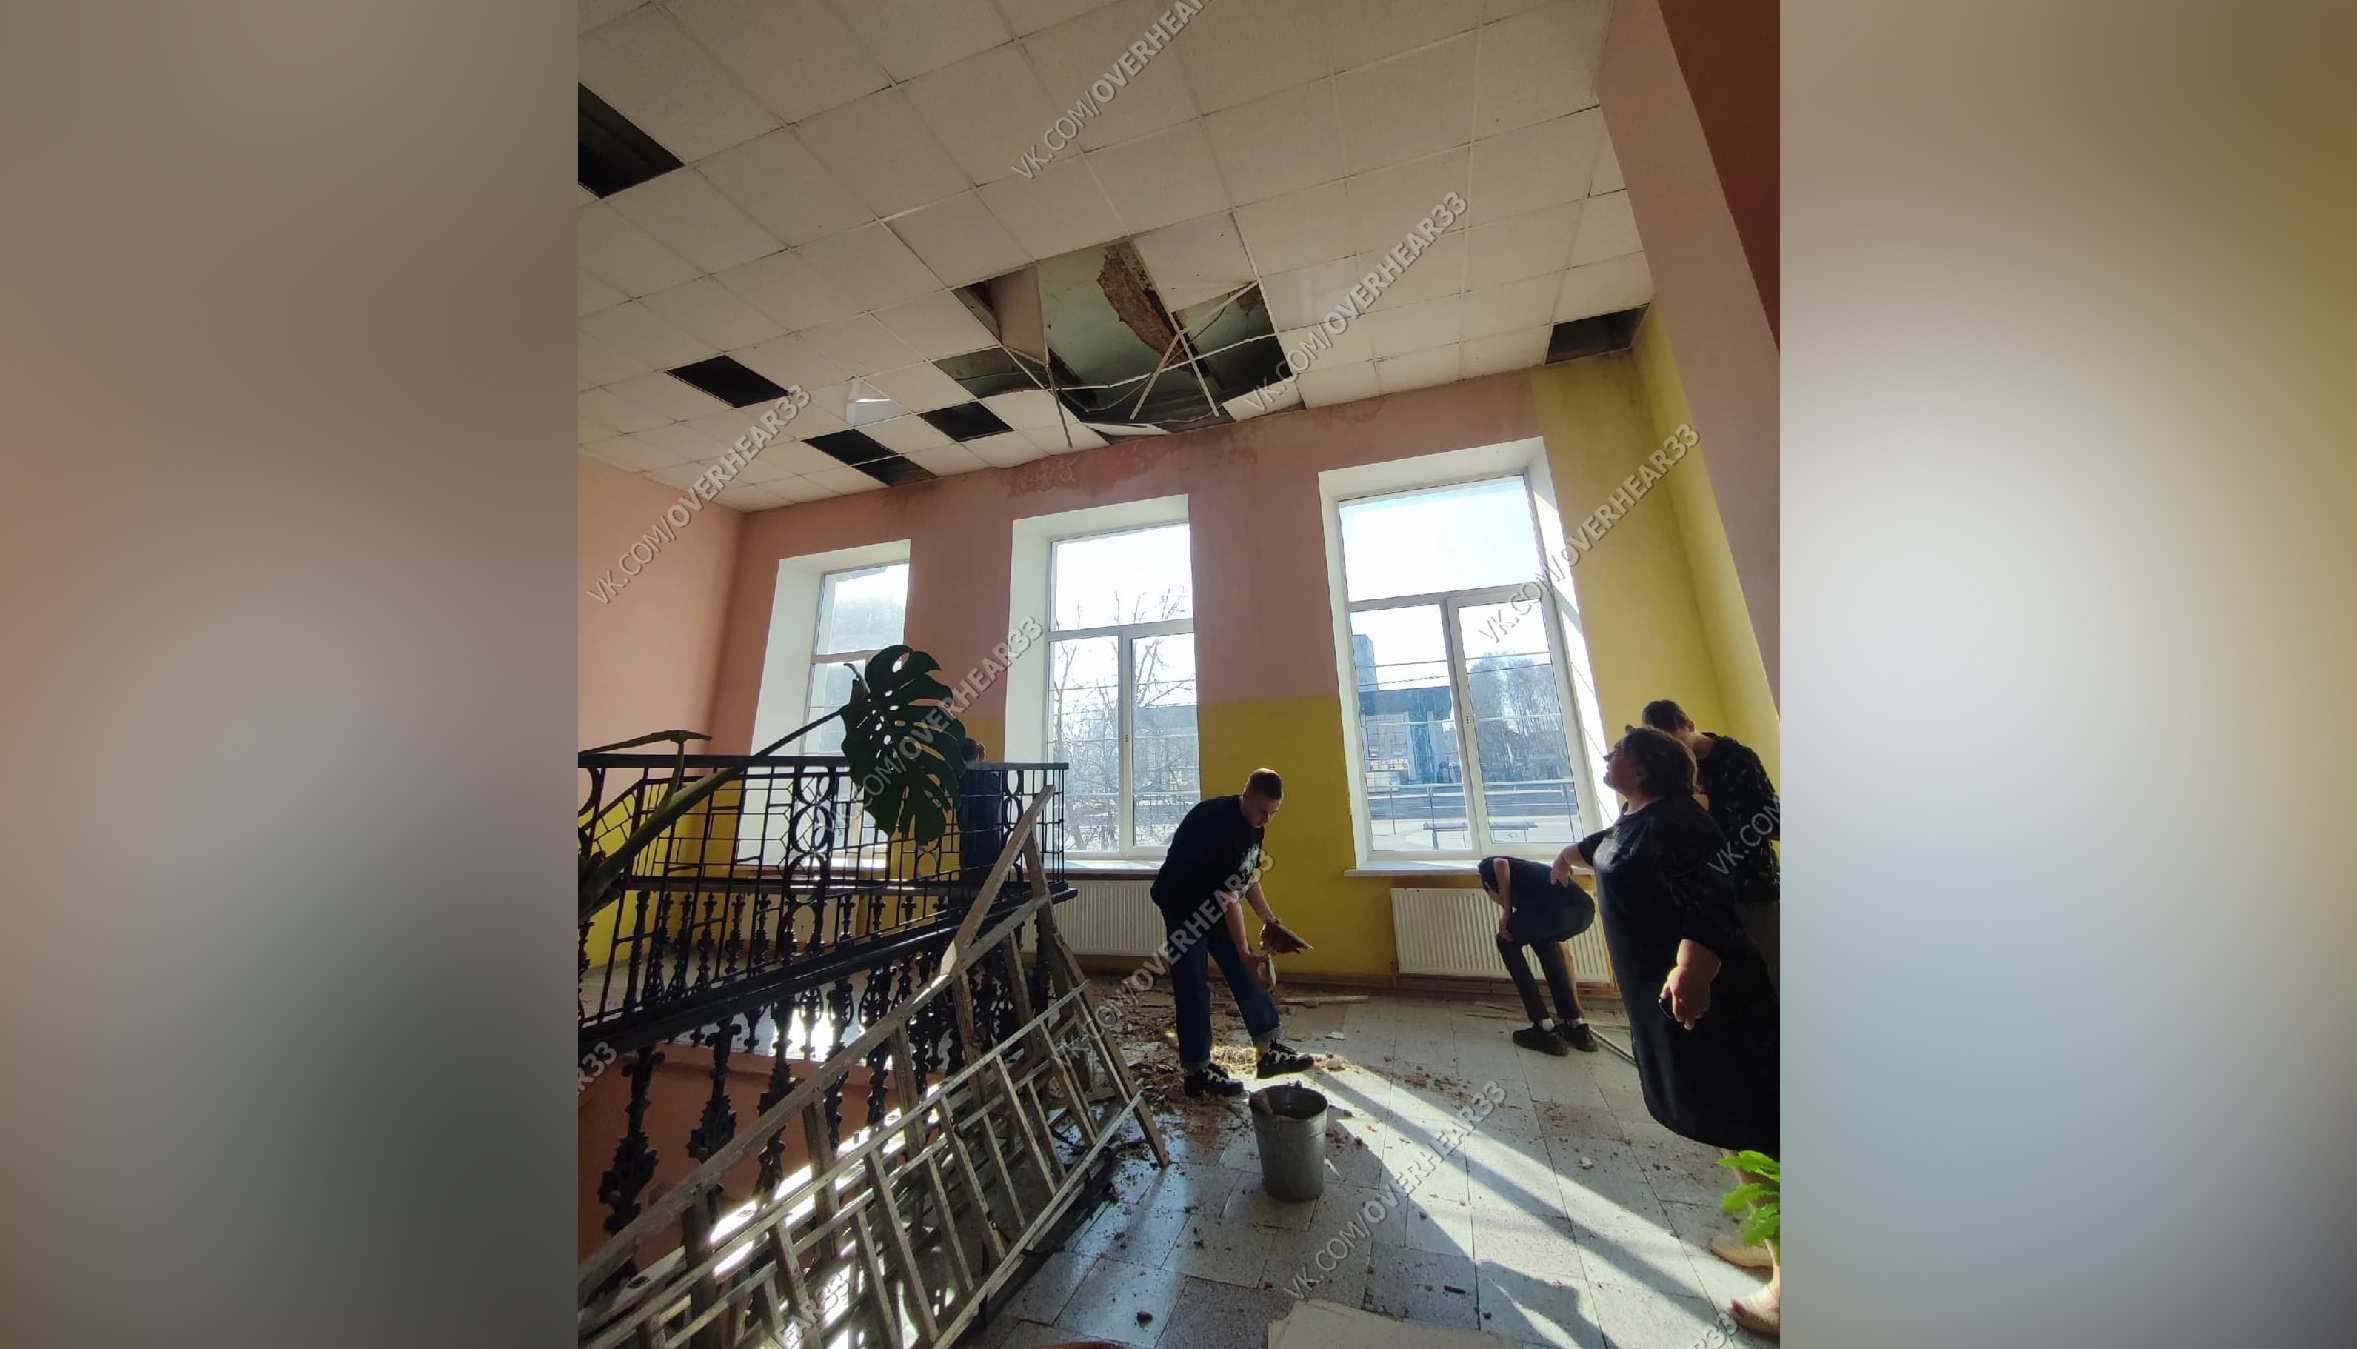 Ученик упал в школе. В школе обвалился потолок. Фасад школы штукатурка. Обрушение потолка в квартире. В школе обрушился потолок на перемене.